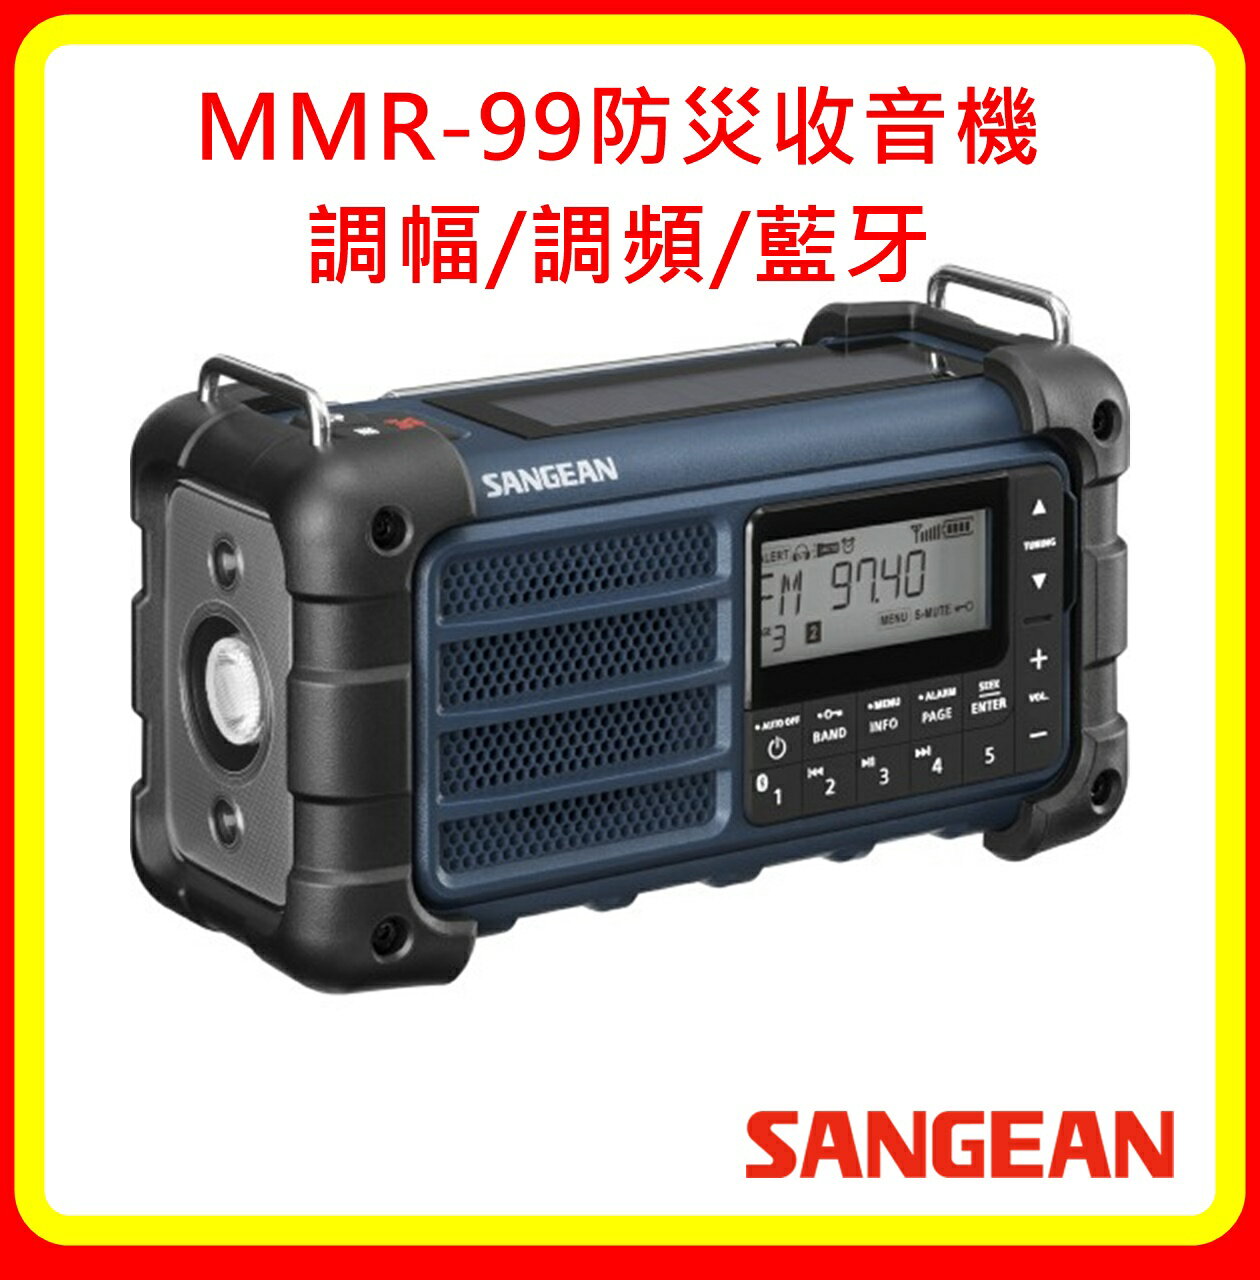 【現貨】SANGEAN山進 MMR-99防災收音機 調幅/調頻/藍牙